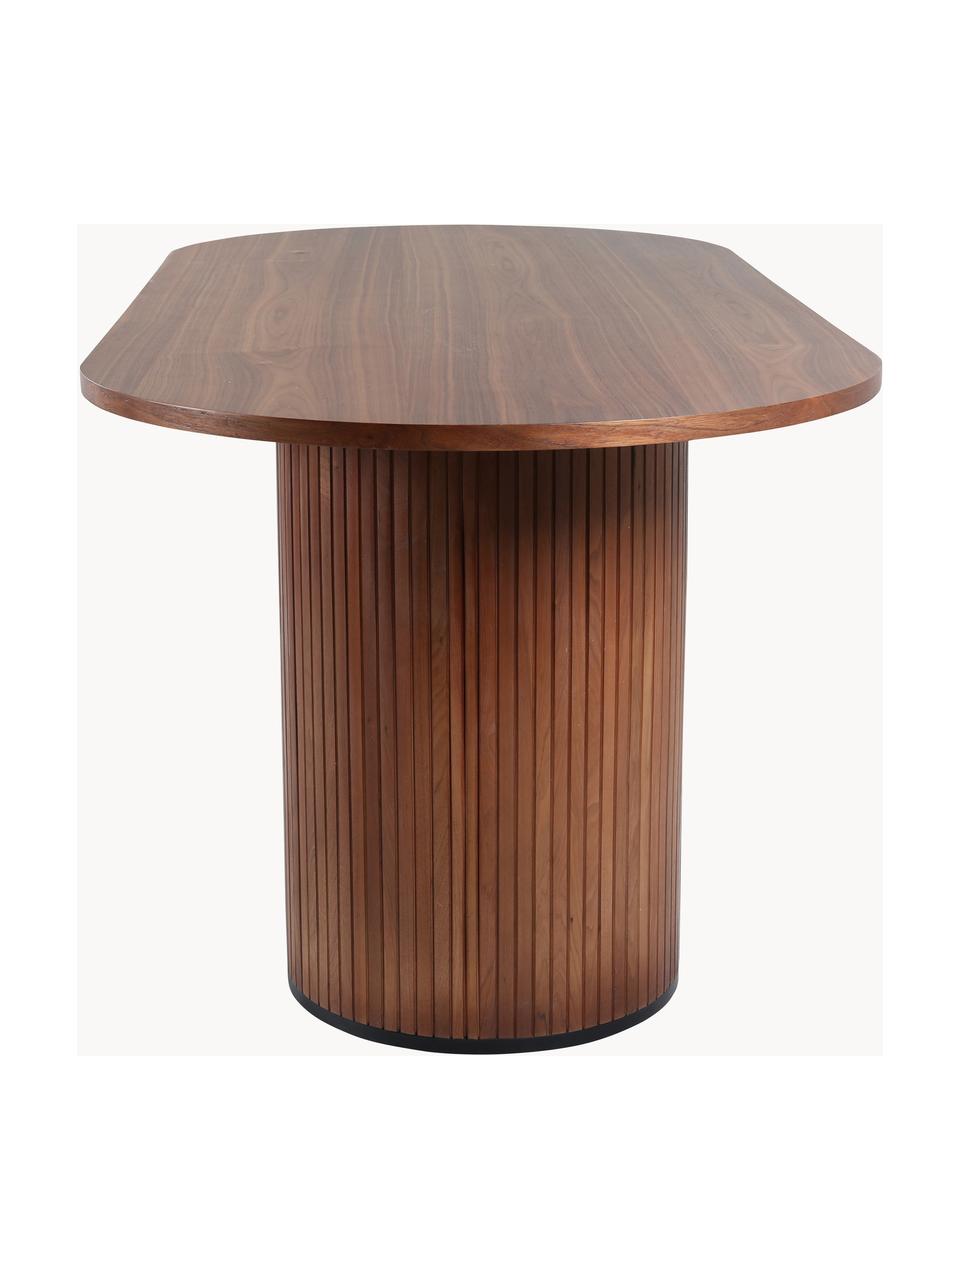 Tavolo ovale con finitura in legno di quercia Bianca, 200 x 90 cm, Legno di quercia, scuro verniciato, Larg. 200 x Prof. 90 cm